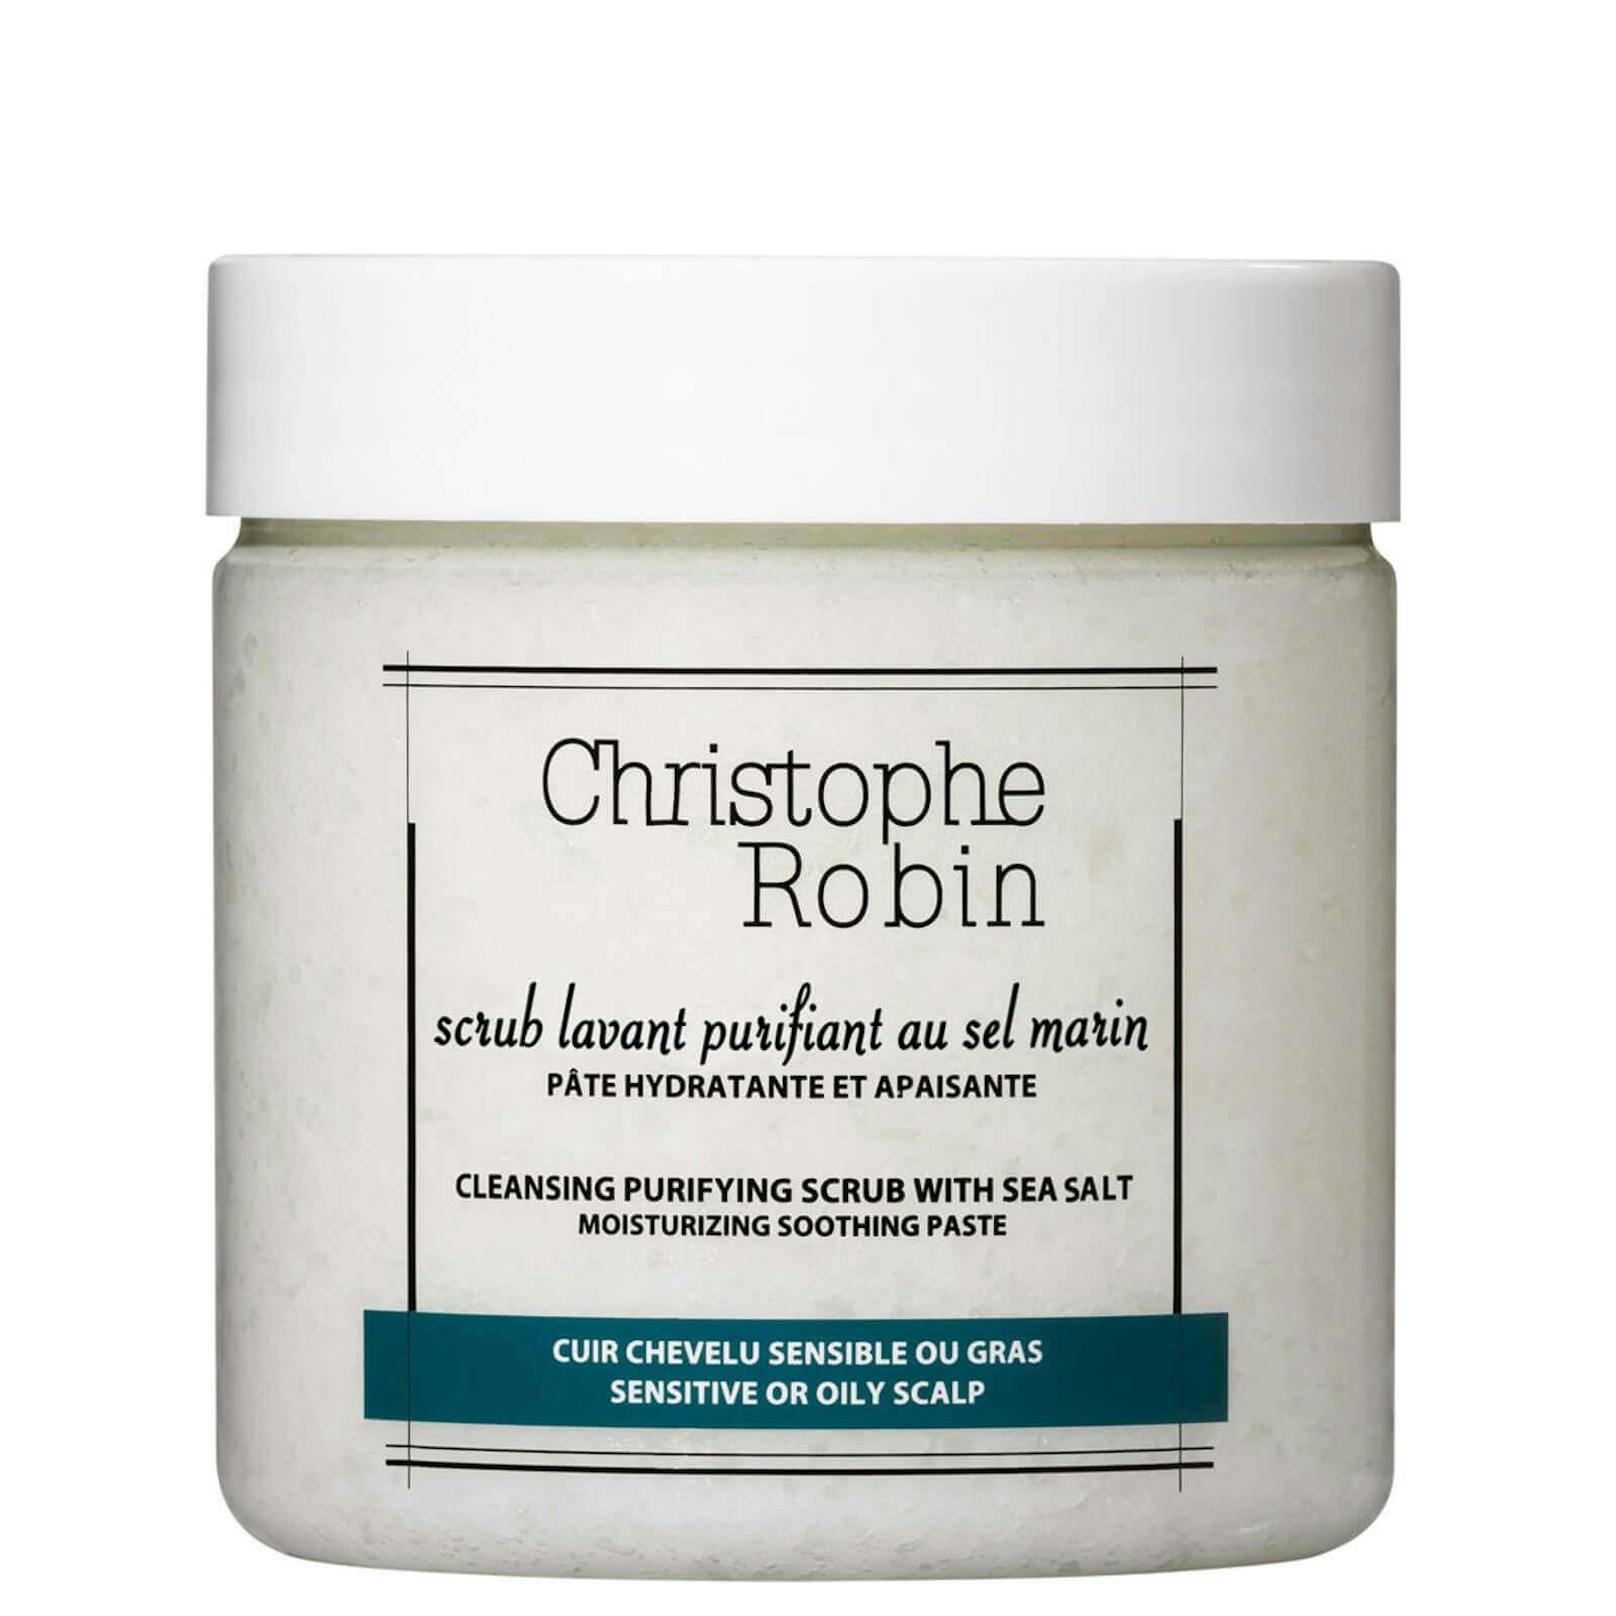 Beruhigt mit Meersalz juckende Kopfhaut und hilft den pH-Wert wieder in Balance zu bringen. Peeling-Shampoo von Christophe Robin.